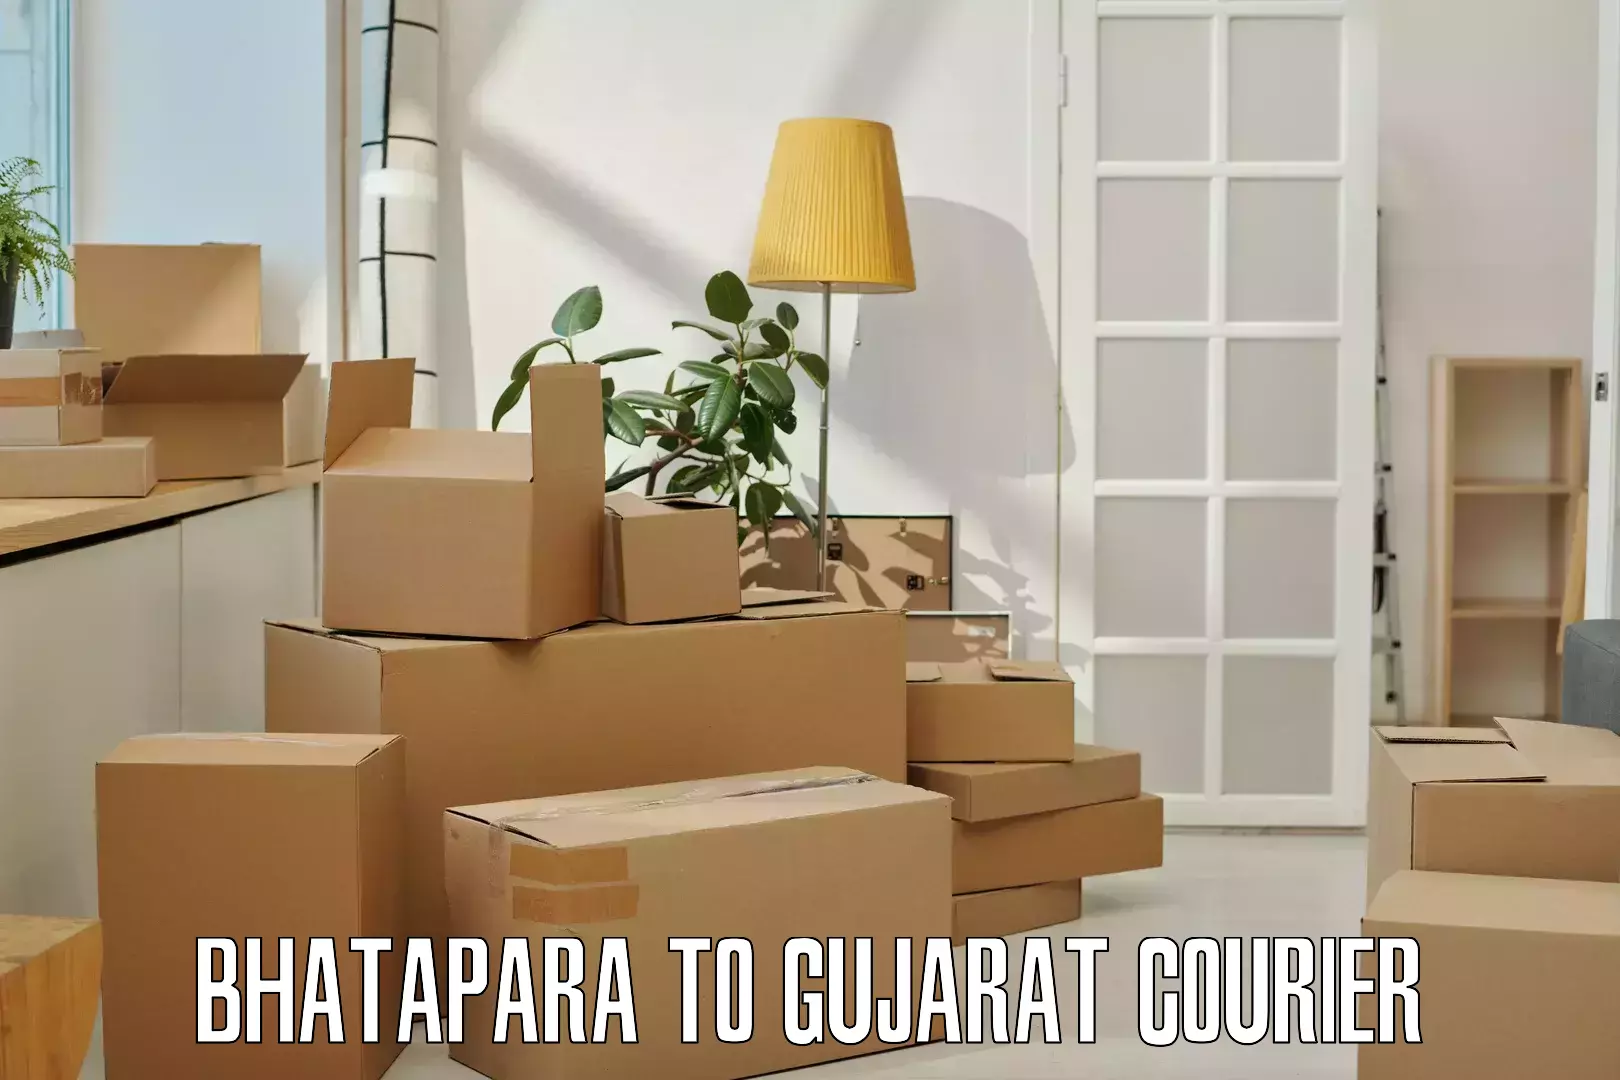 Shipping and handling Bhatapara to Nanpura